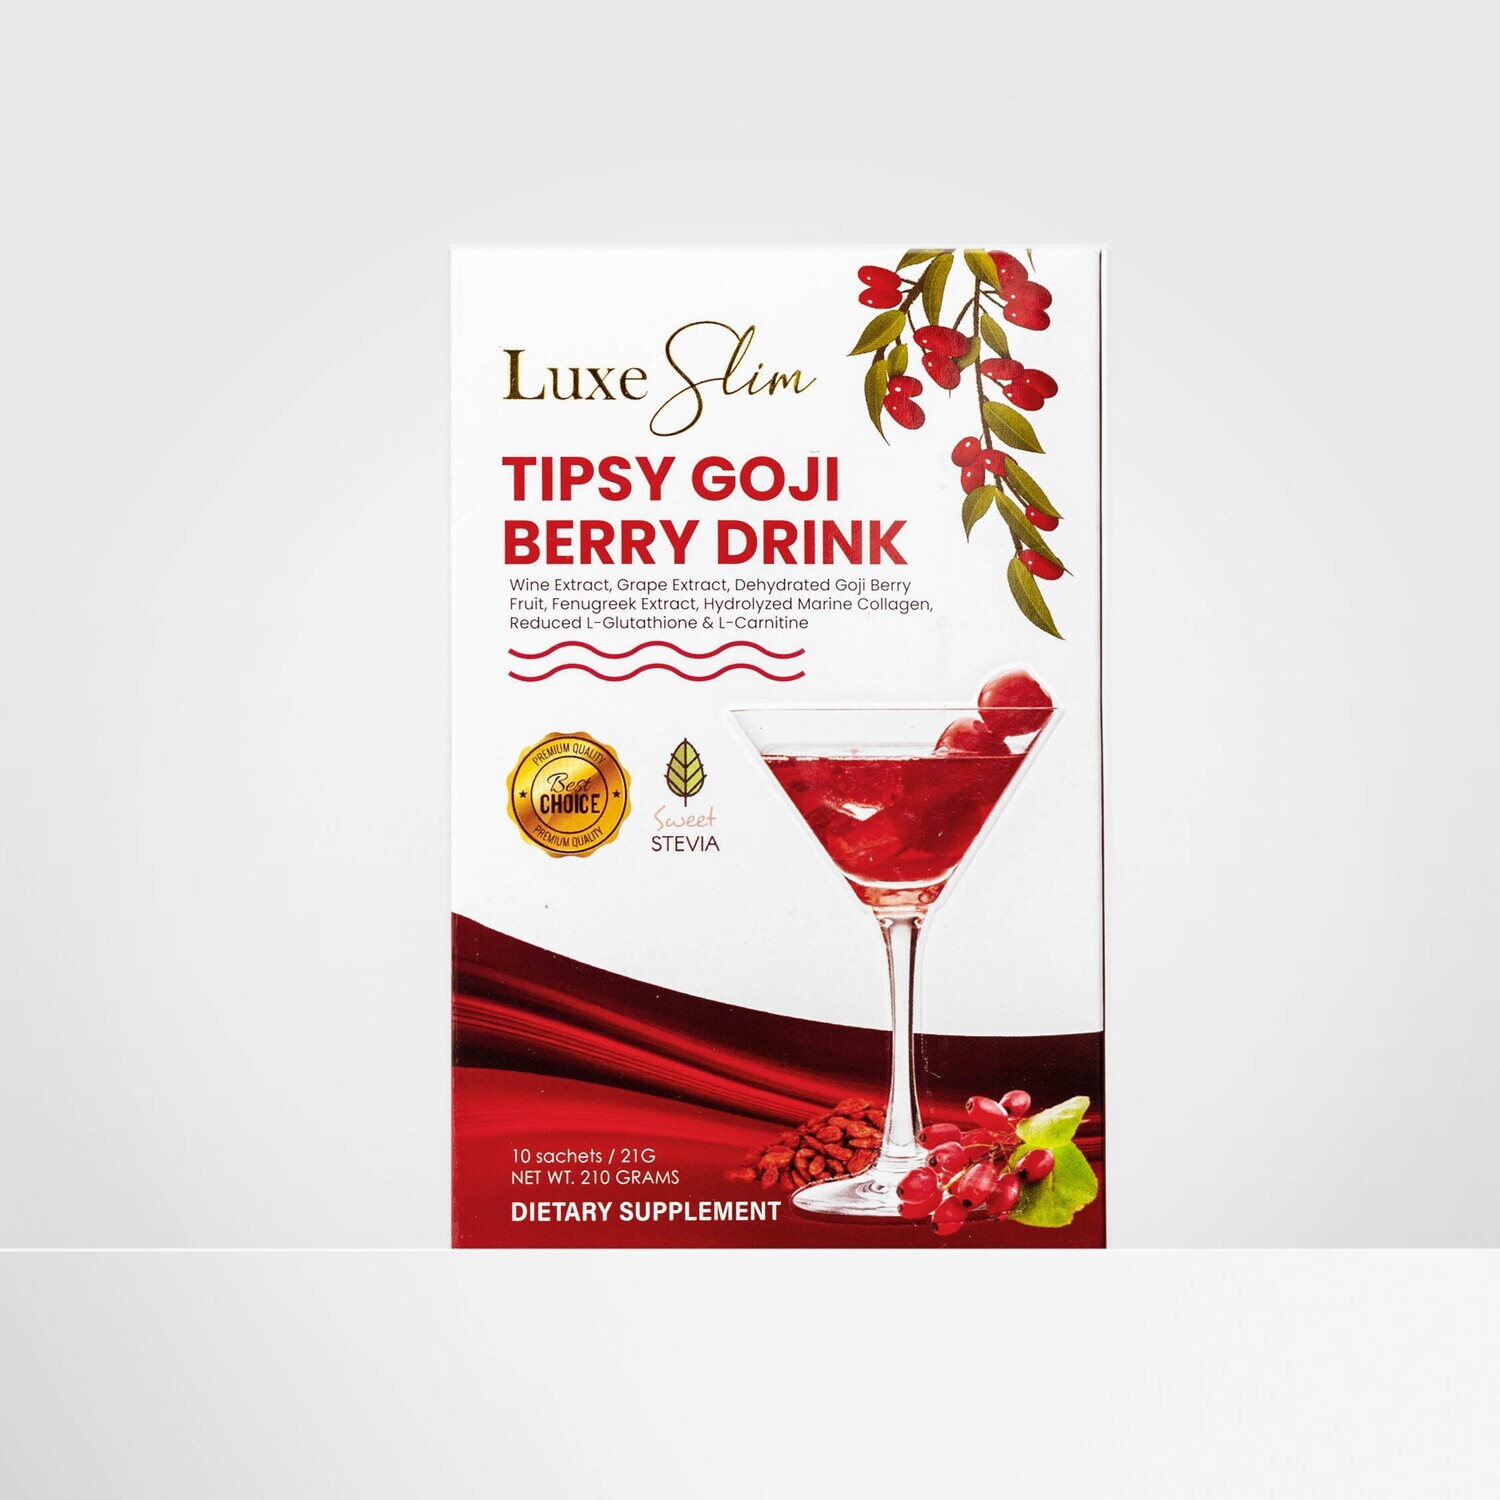 ​Luxe Slim TIipsy Goji Berry Drink Beauty Juice 10 Sachets - 210g